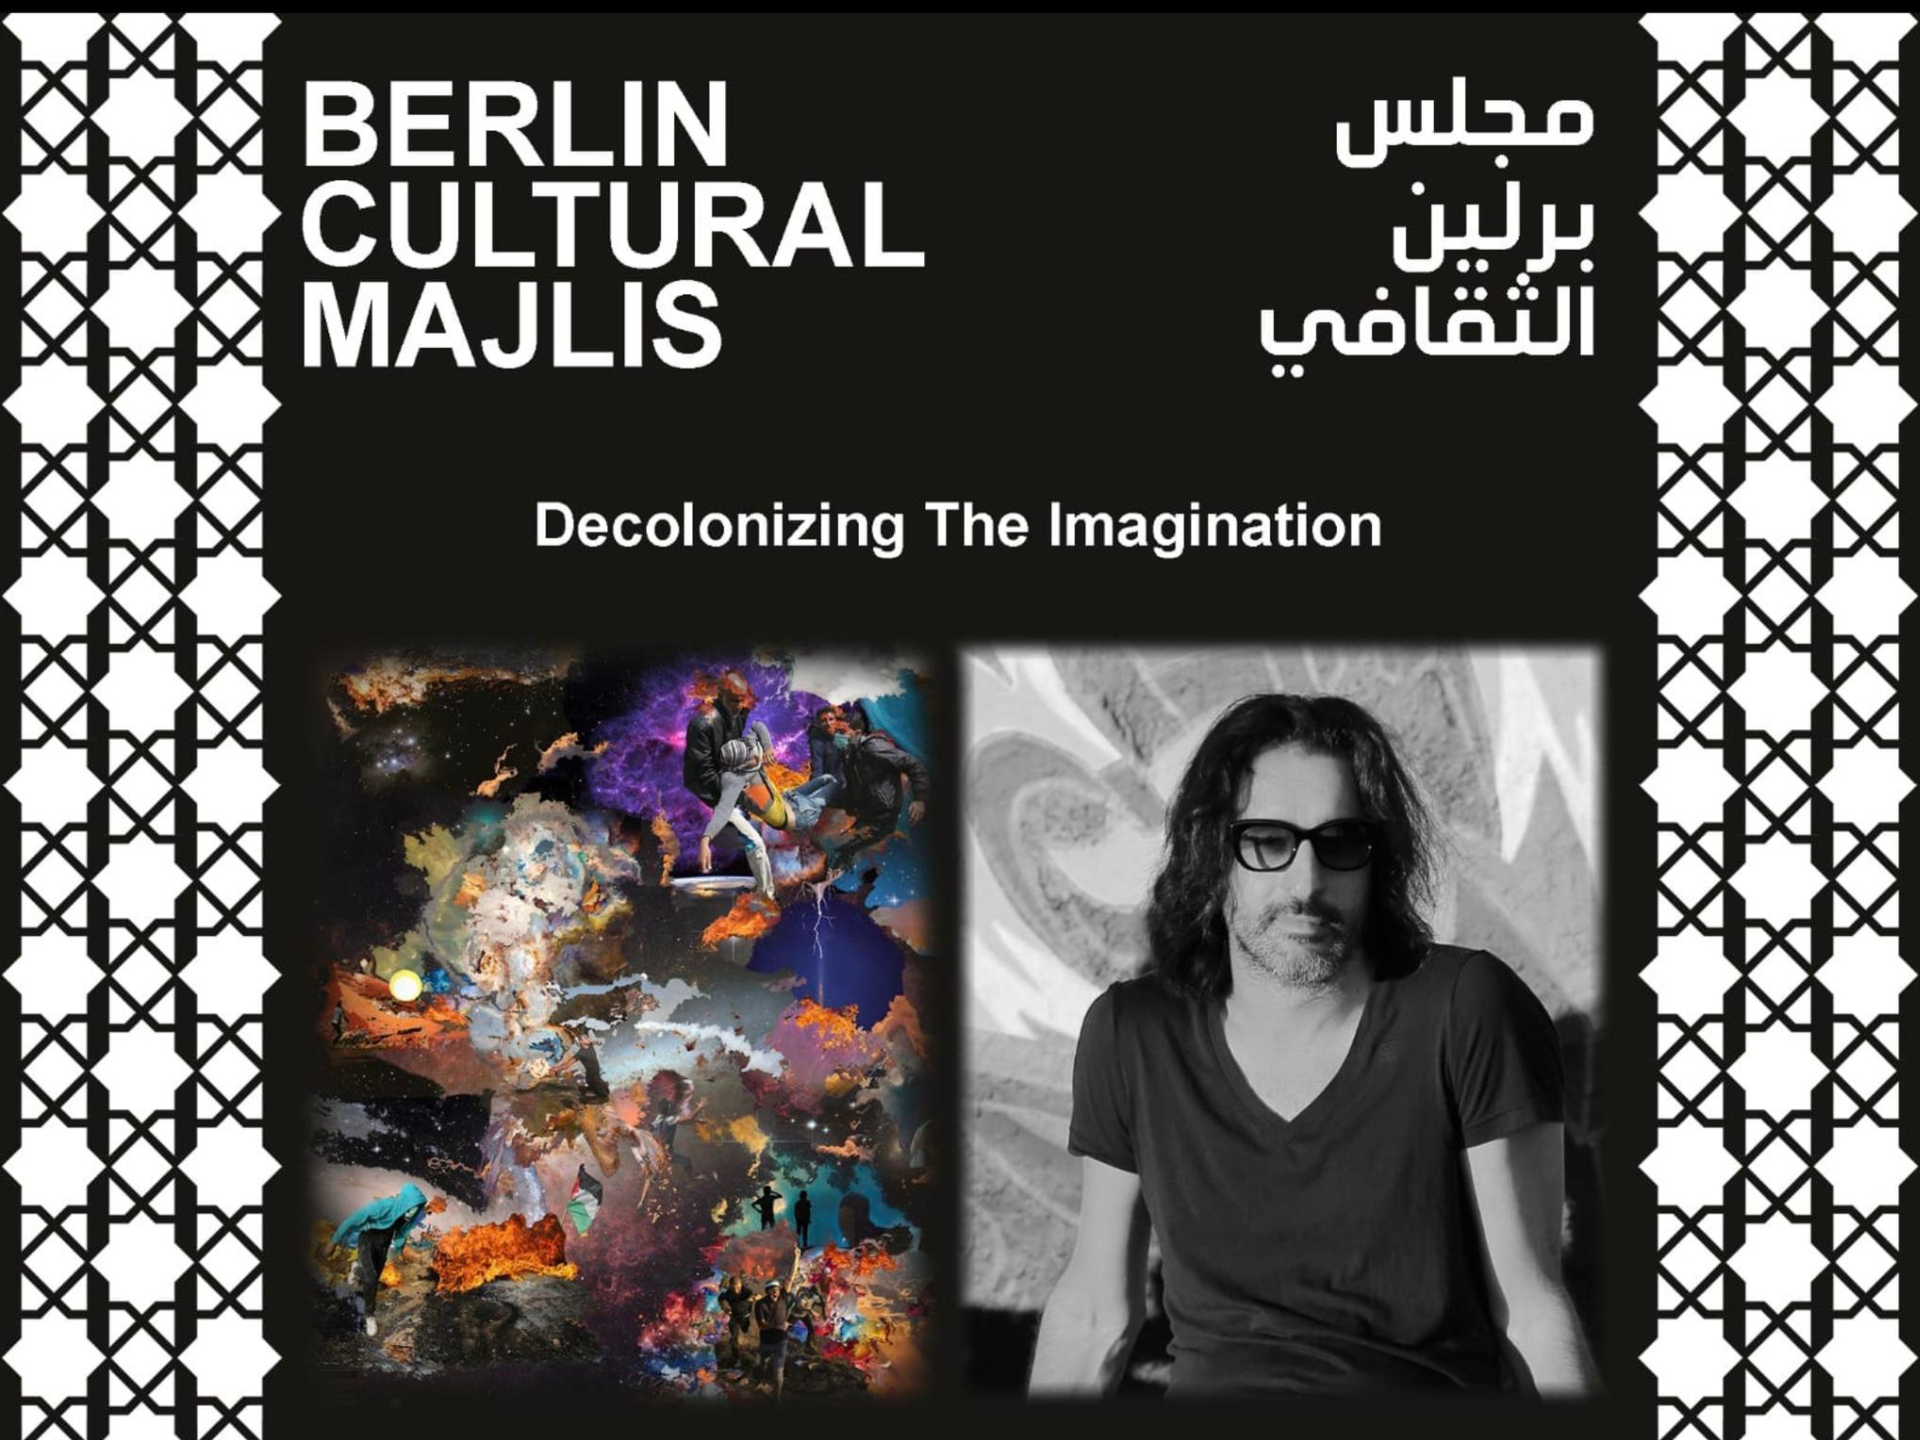 panneau | Majlis culturel de Berlin